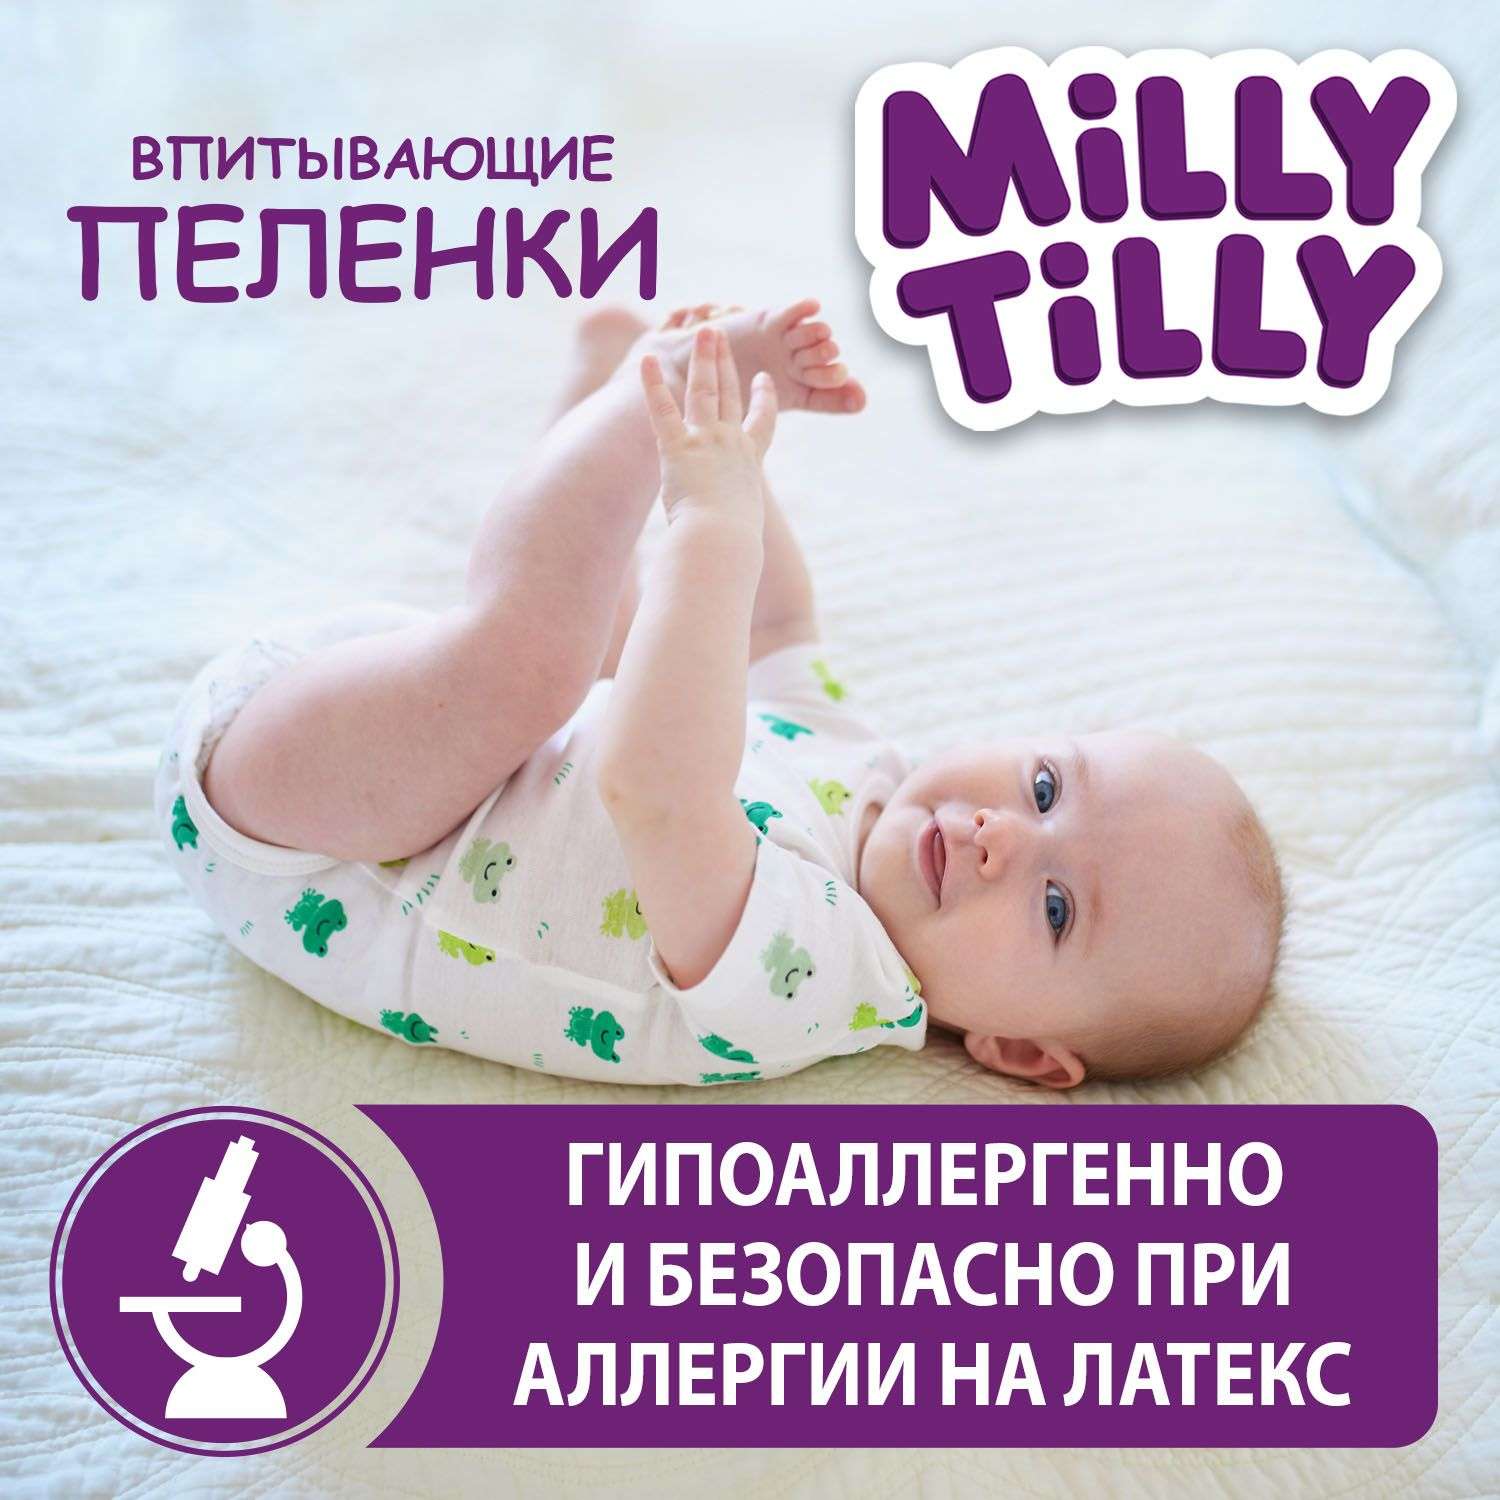 Пеленки детские Milly Tilly одноразовые Normal 60х90 30 штук - фото 2